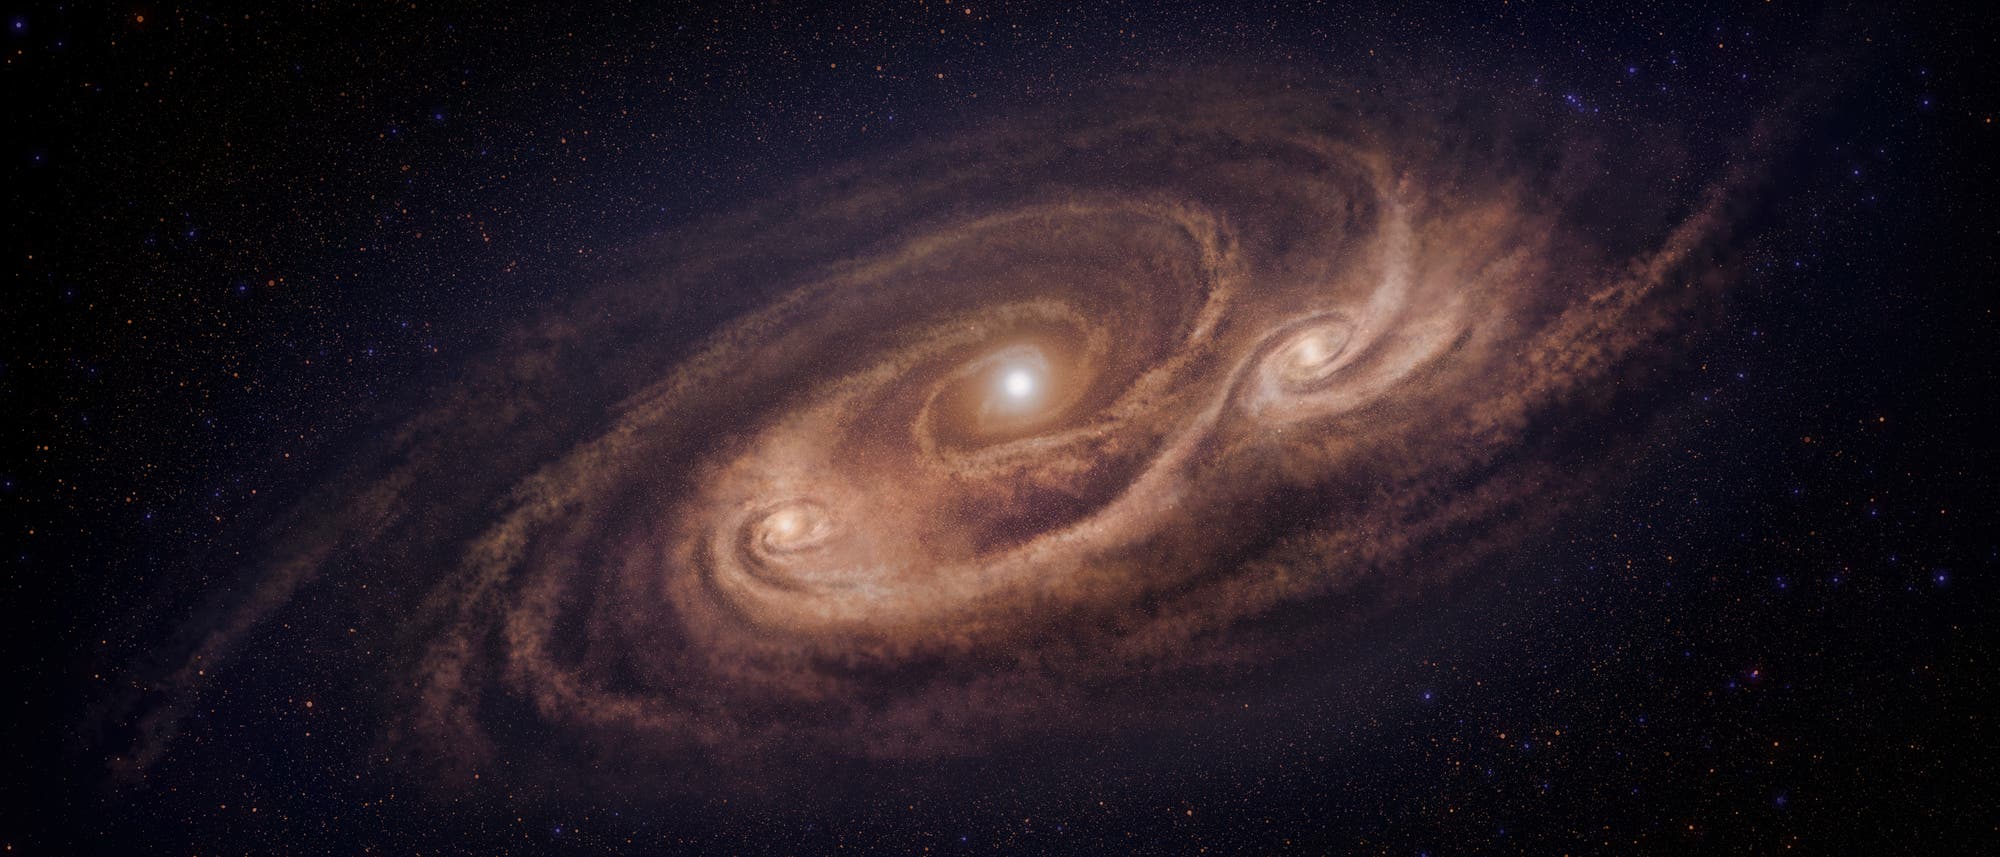 Die Galaxie COSMOS-AzTEC-1 - ein Sternbildungsmonster nach der Fantasie des Künstlers